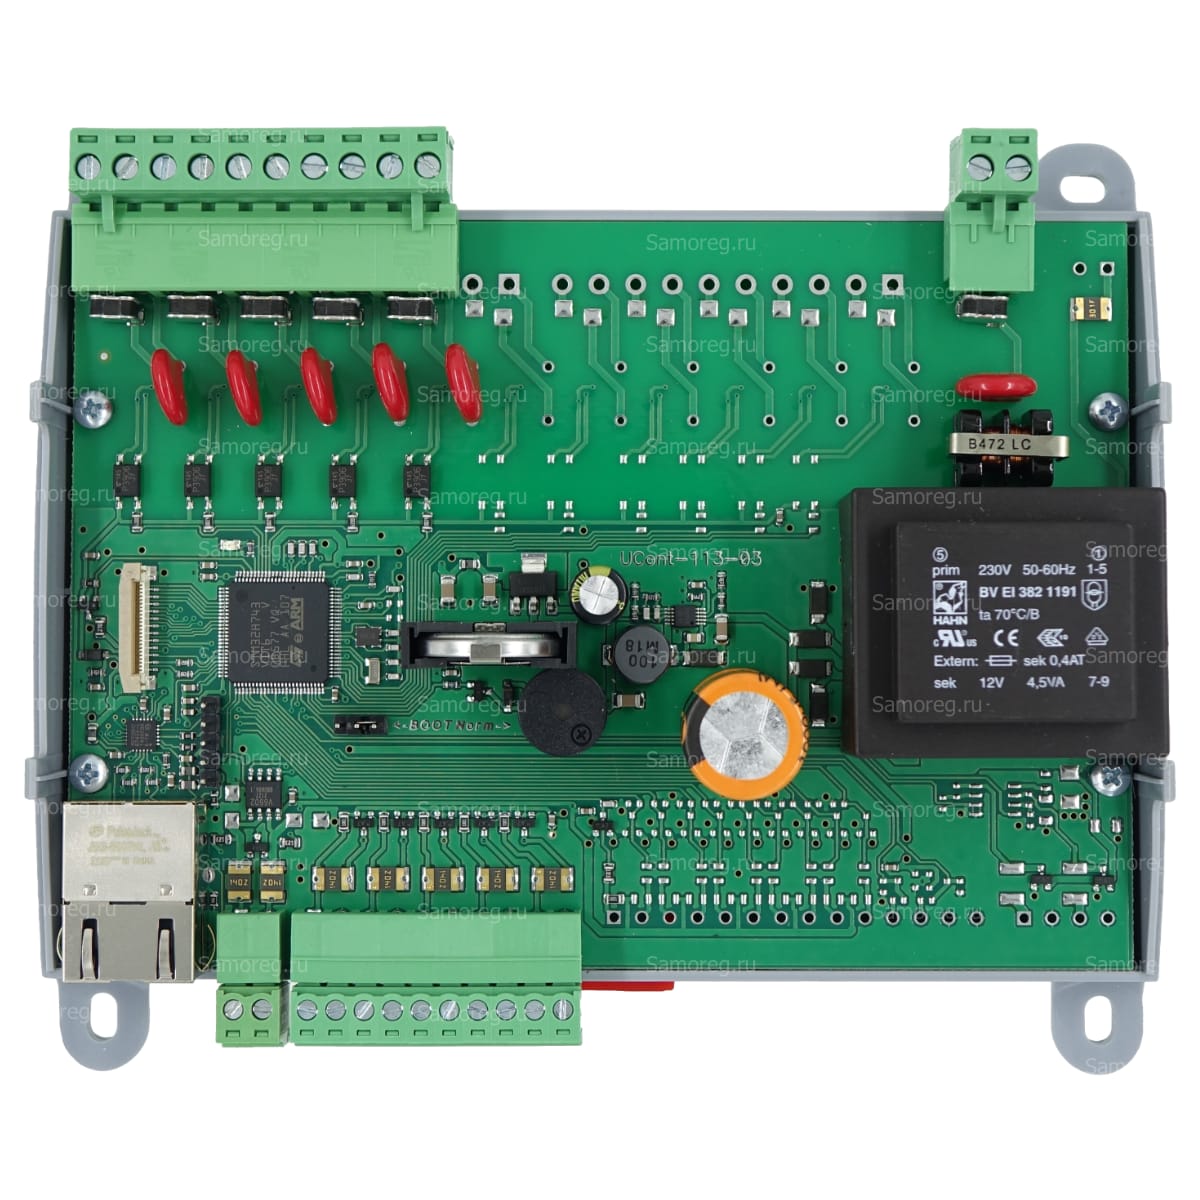 Контроллер TEPLOLUXE 2000 для автоматического управления системами обогрева